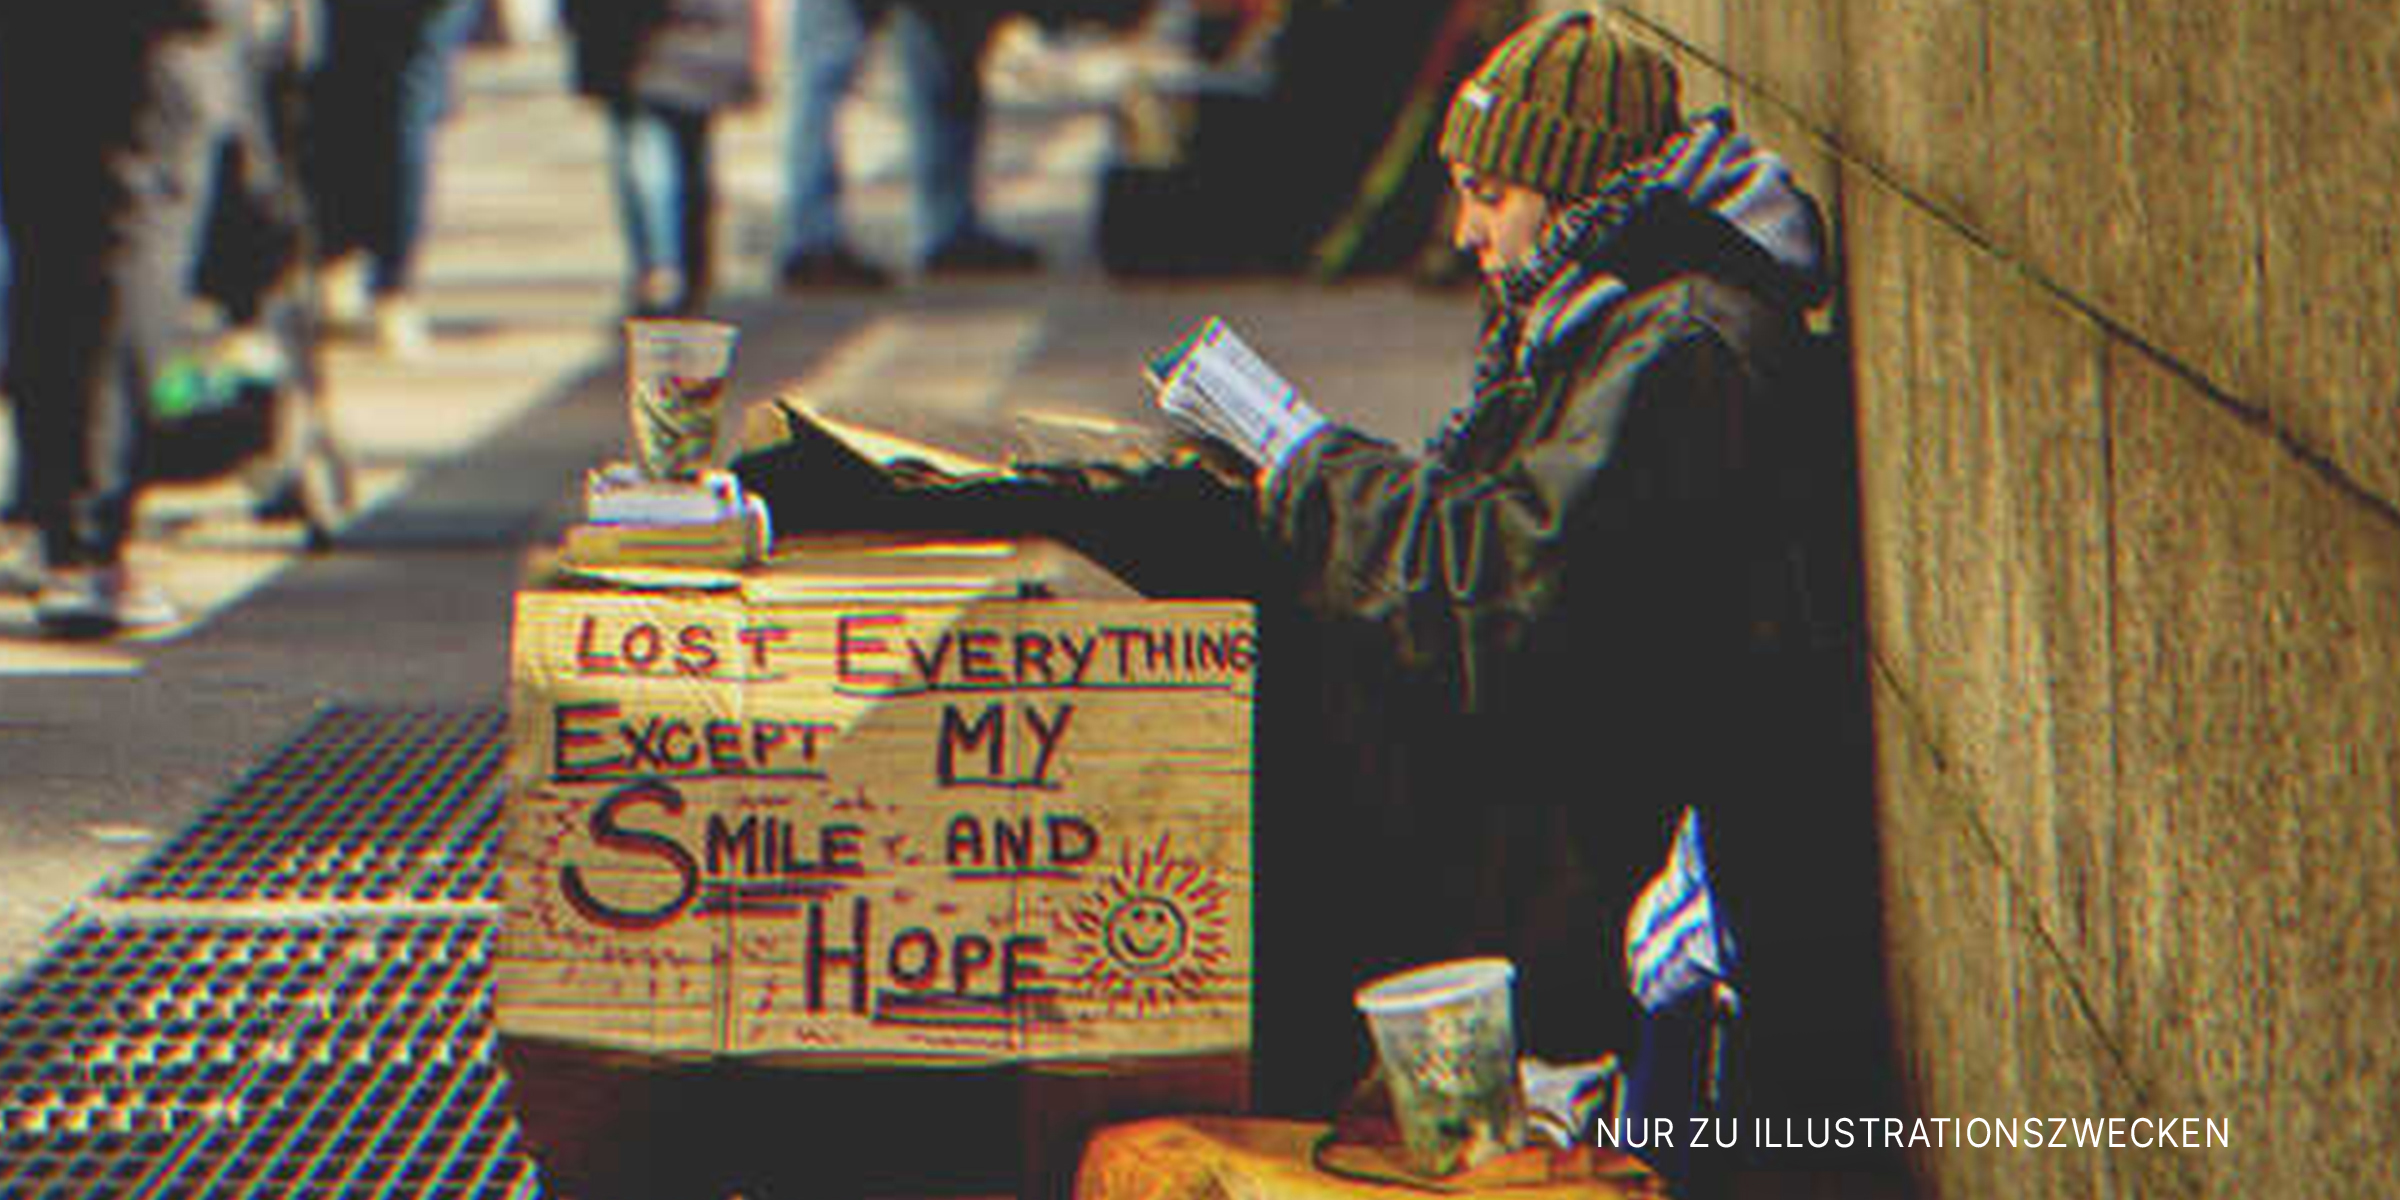 Ein Obdachloser | Quelle: Shutterstock